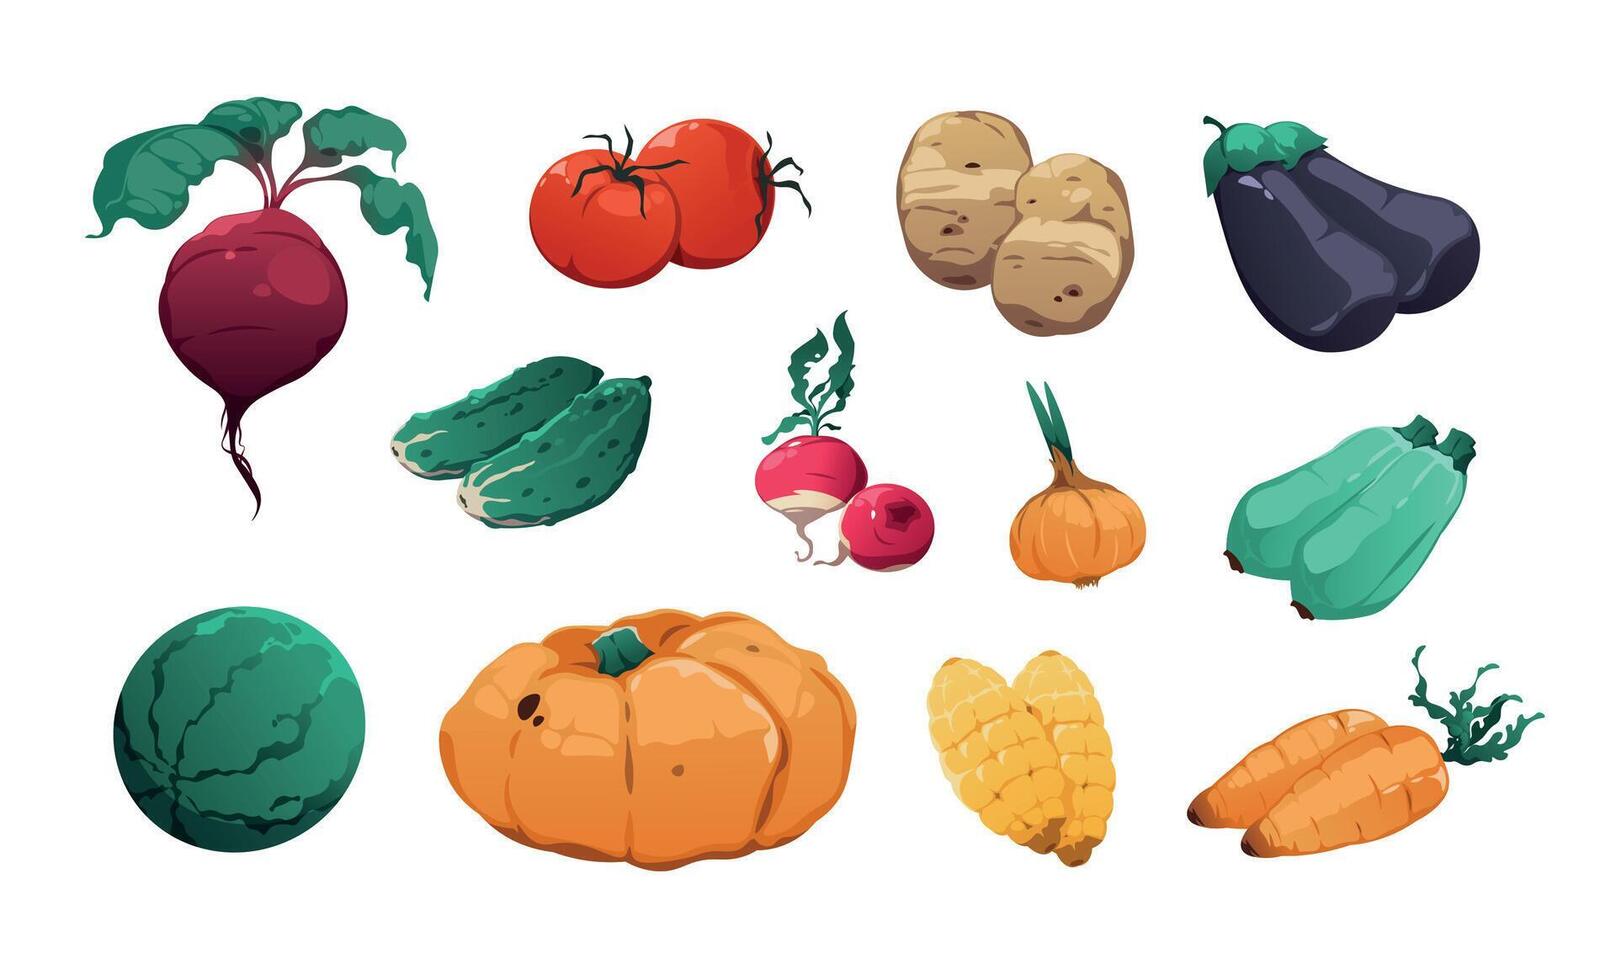 Gemüse Sammlung. frisch Bauernhof Essen höchst detailliert Karikatur Spiel Anlagegut von Tomaten Kartoffel Kürbis Mais Karotte Zwiebel Gurke. Vektor organisch bunt vegan Essen einstellen